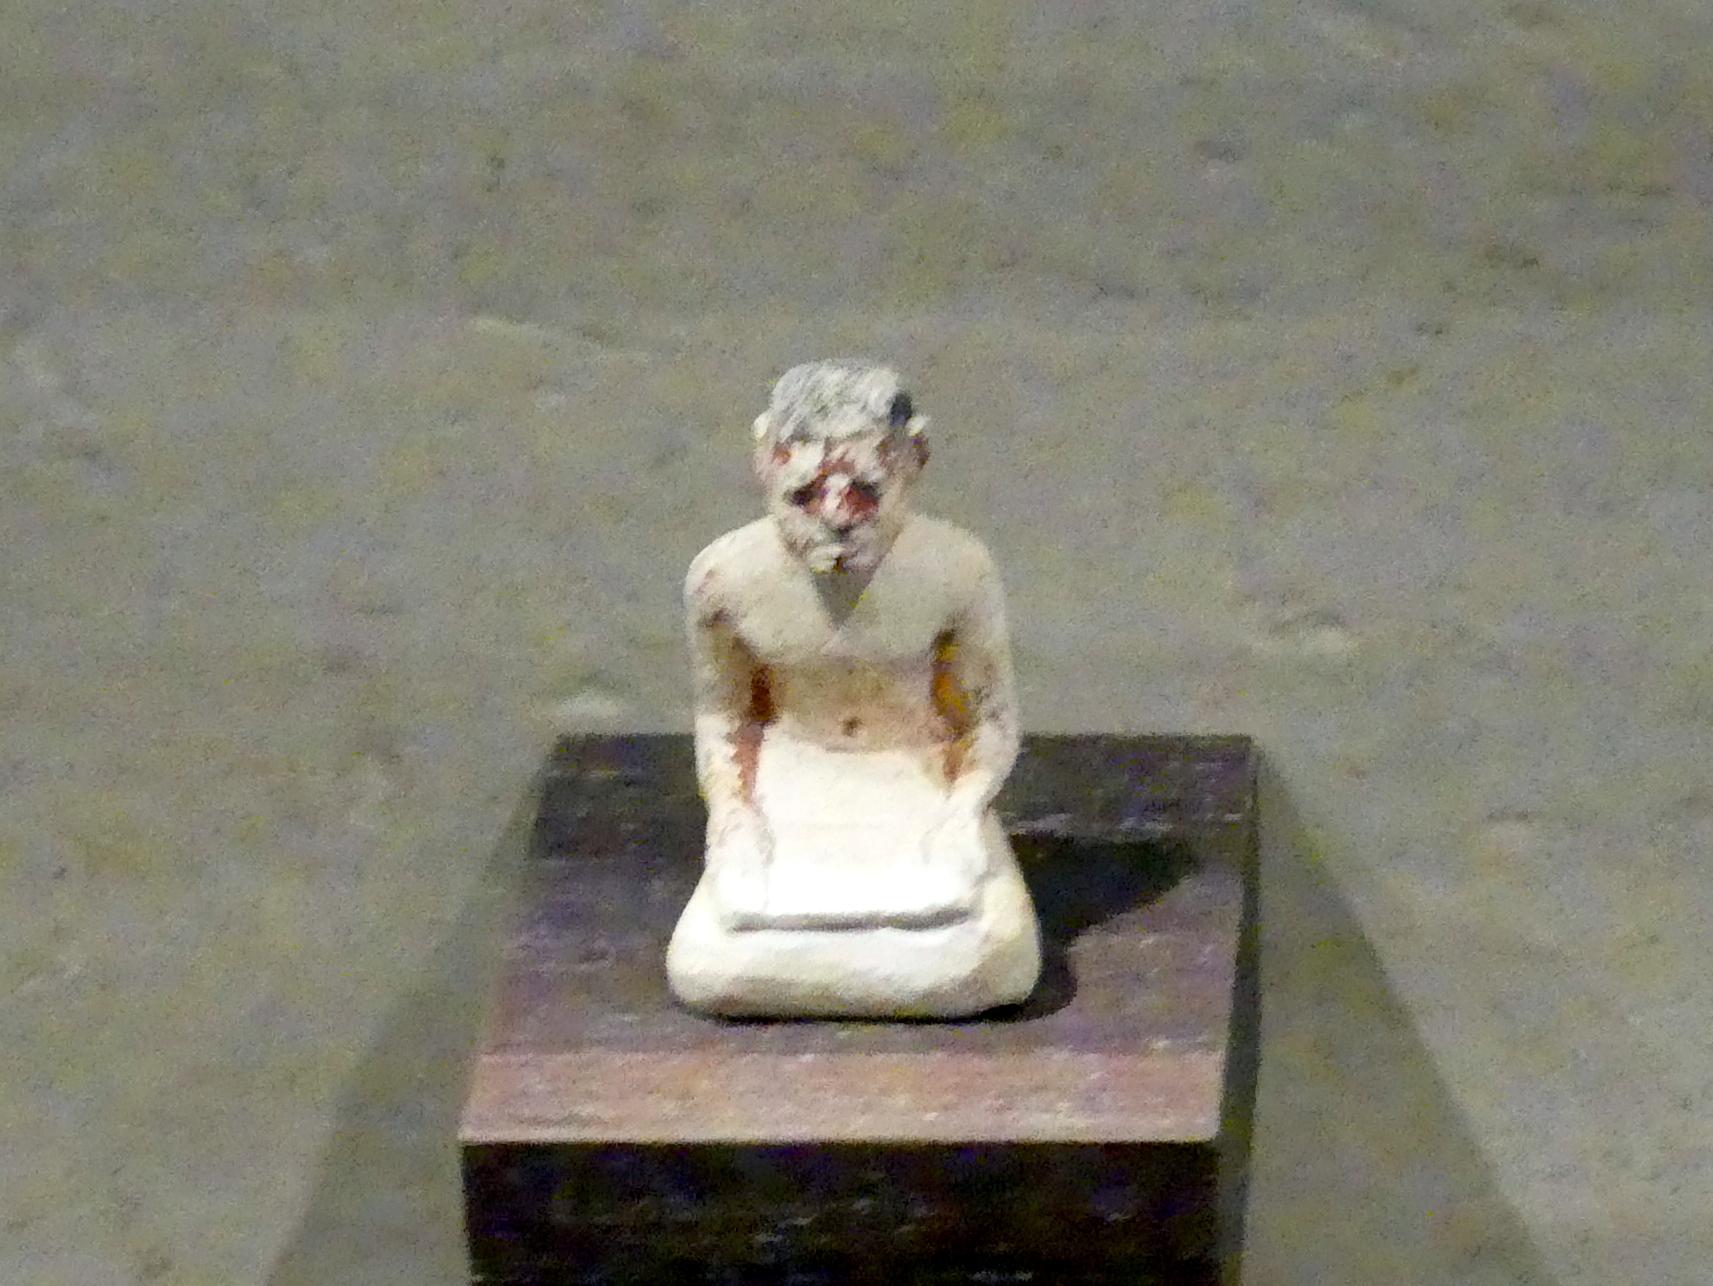 Statuette eines Schreibers, 12. Dynastie, 1678 - 1634 v. Chr., 1900 - 1850 v. Chr.